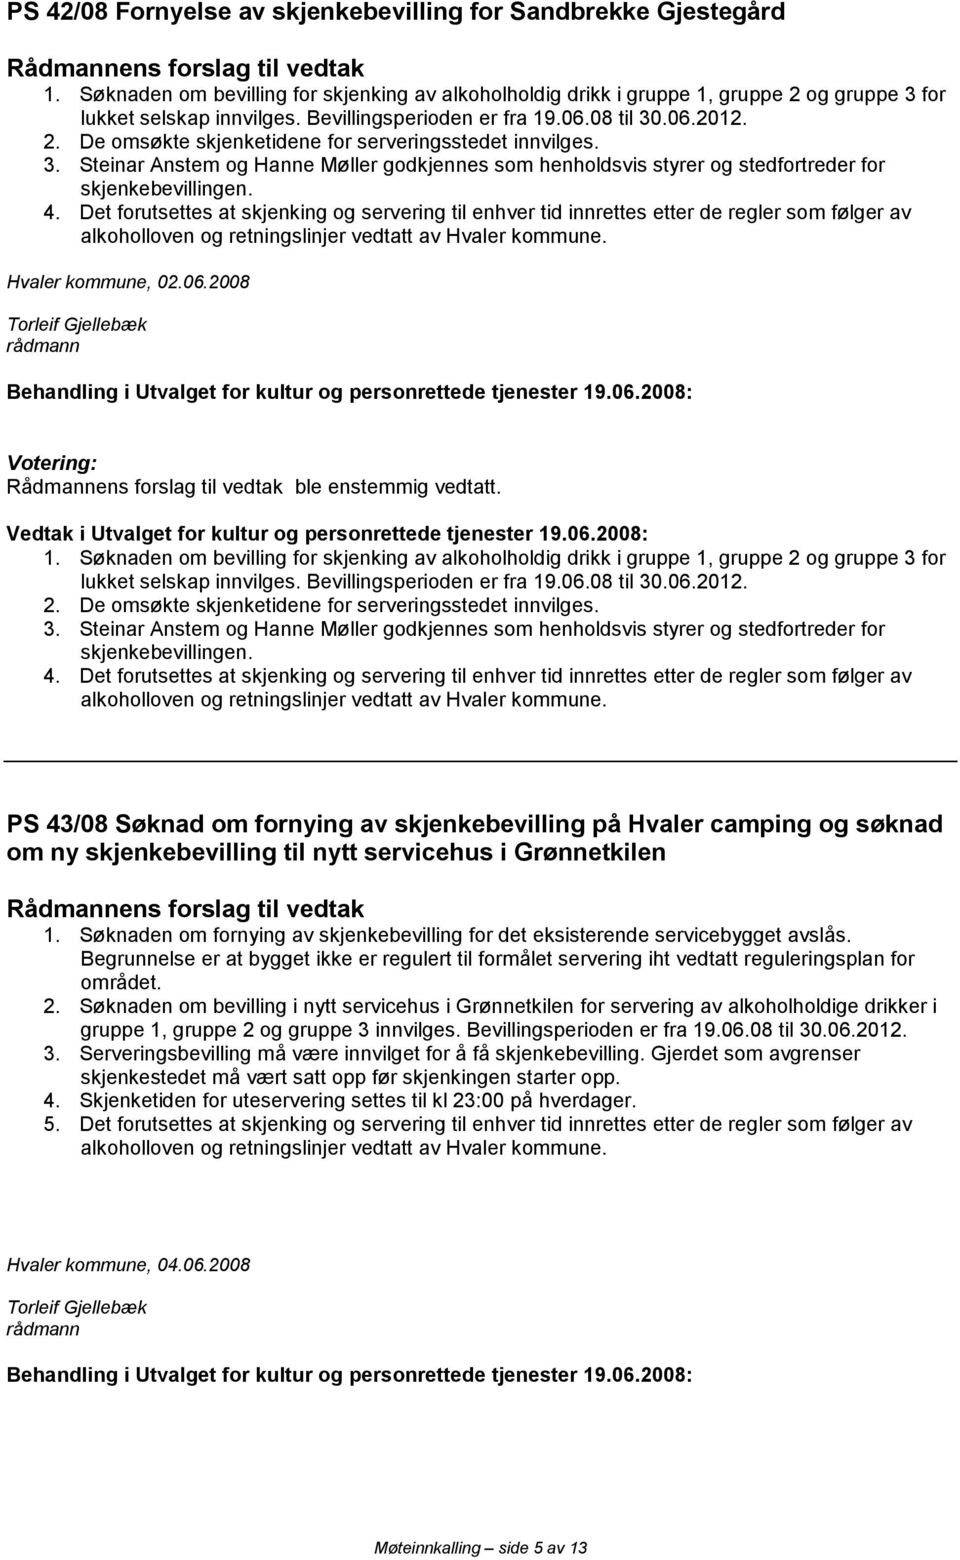 4. Det forutsettes at skjenking og servering til enhver tid innrettes etter de regler som følger av Hvaler kommune, 02.06.2008 ble enstemmig vedtatt. 1.